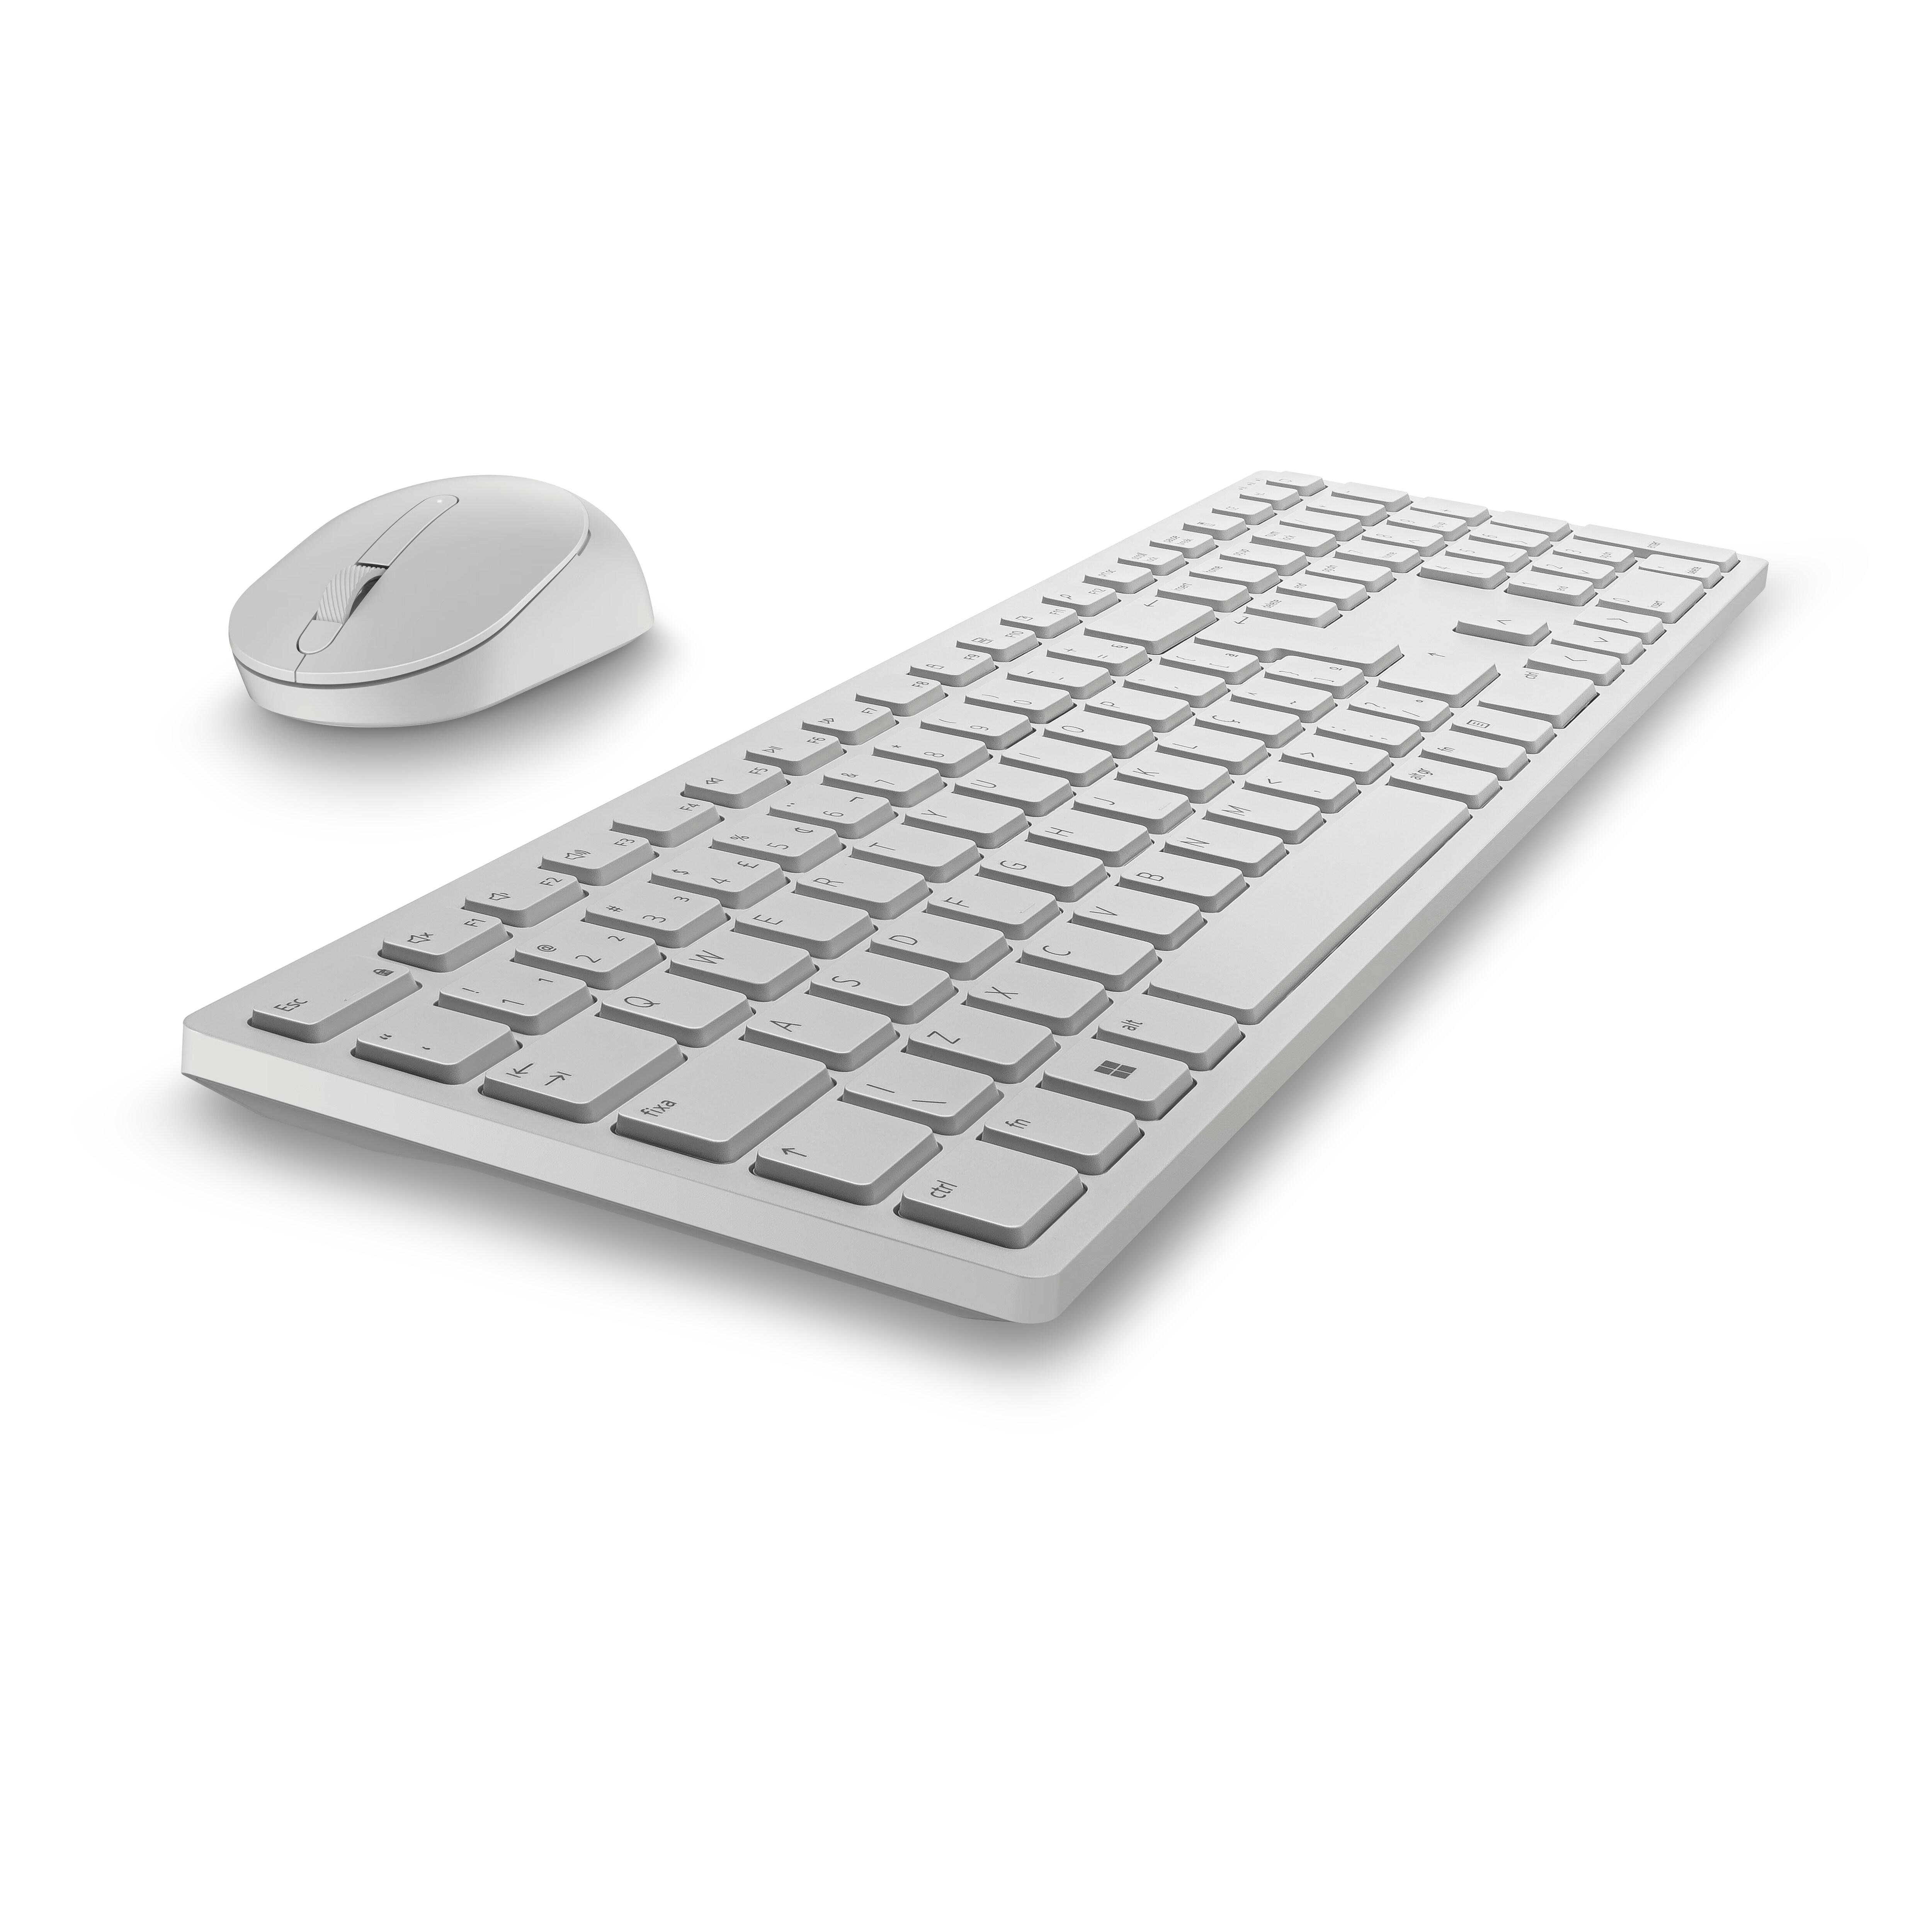 Teclado e mouse sem fio Dell Pro — KM5221W